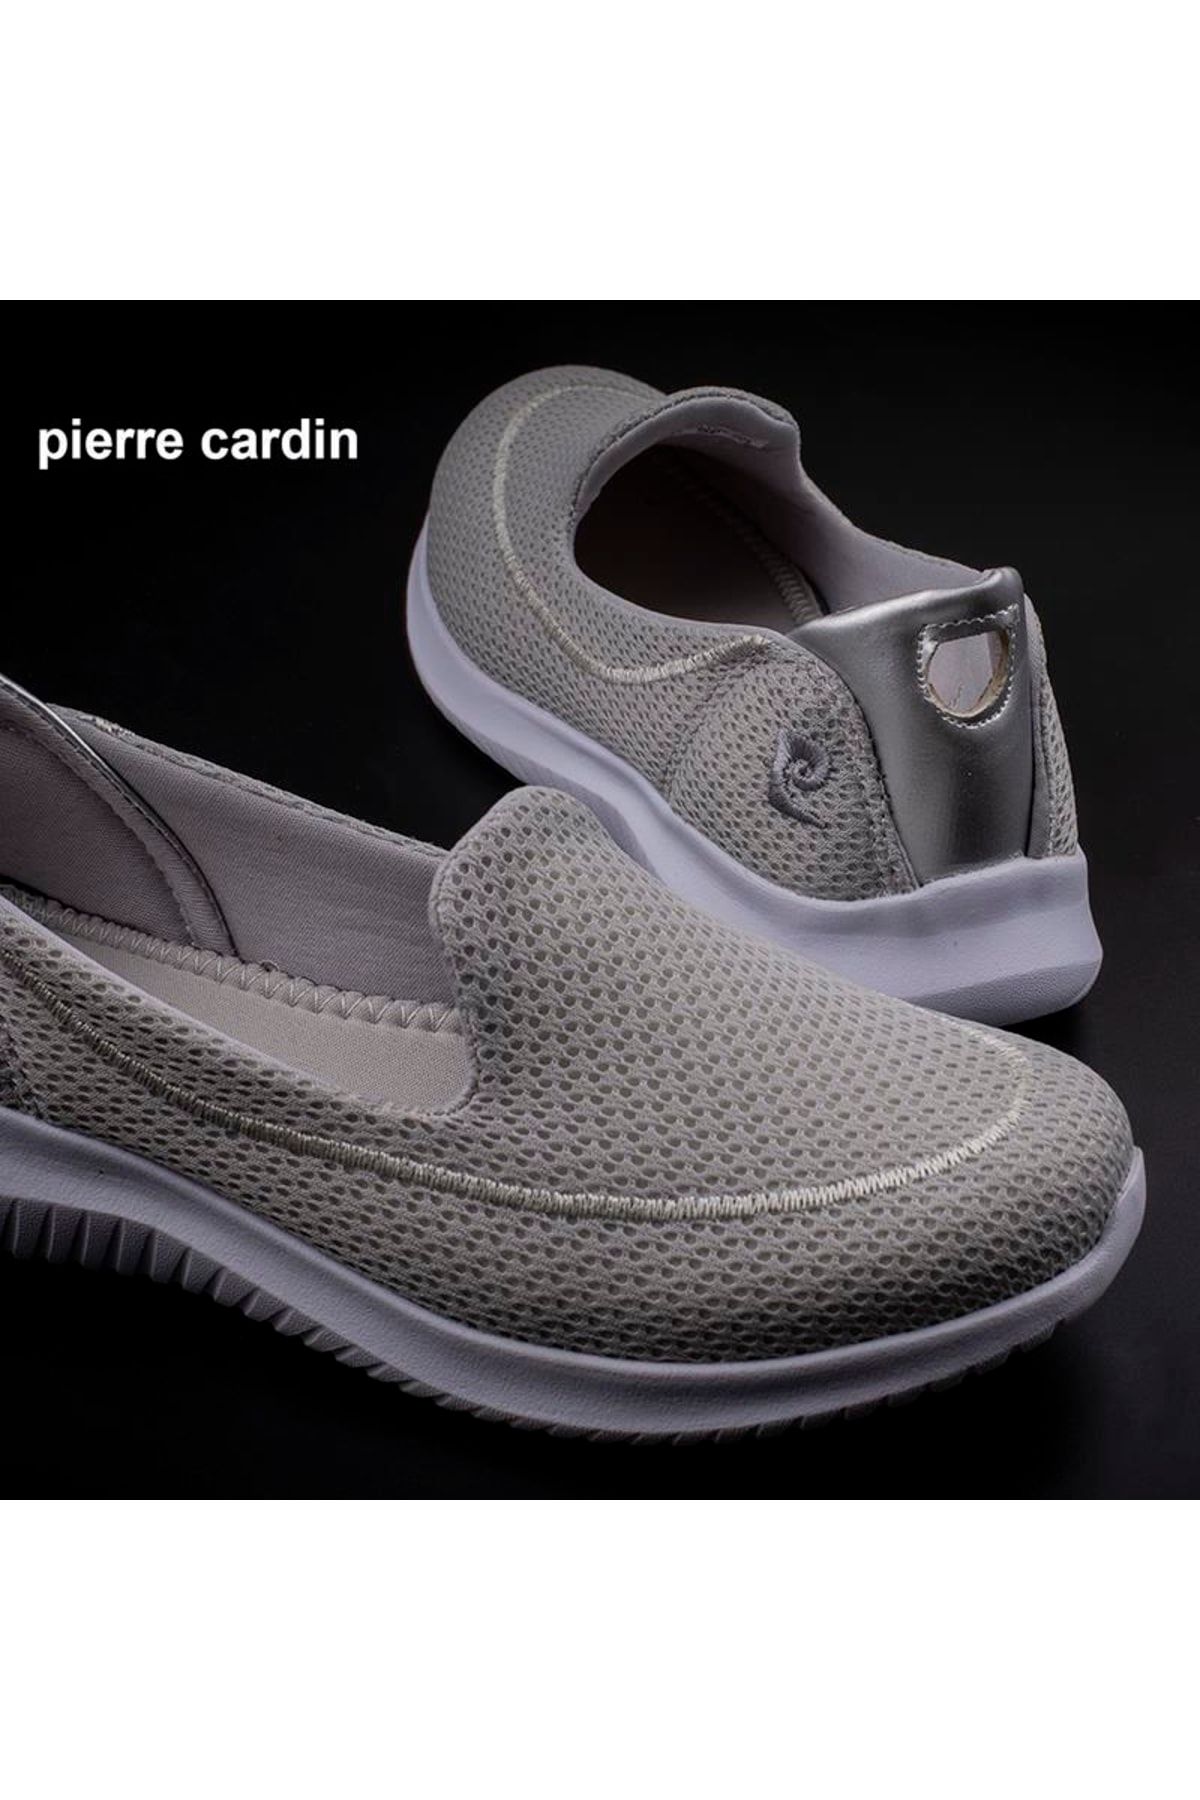 Pierre Cardin Gri Sepvel Kadın Hafif Günlük Ayakkabı